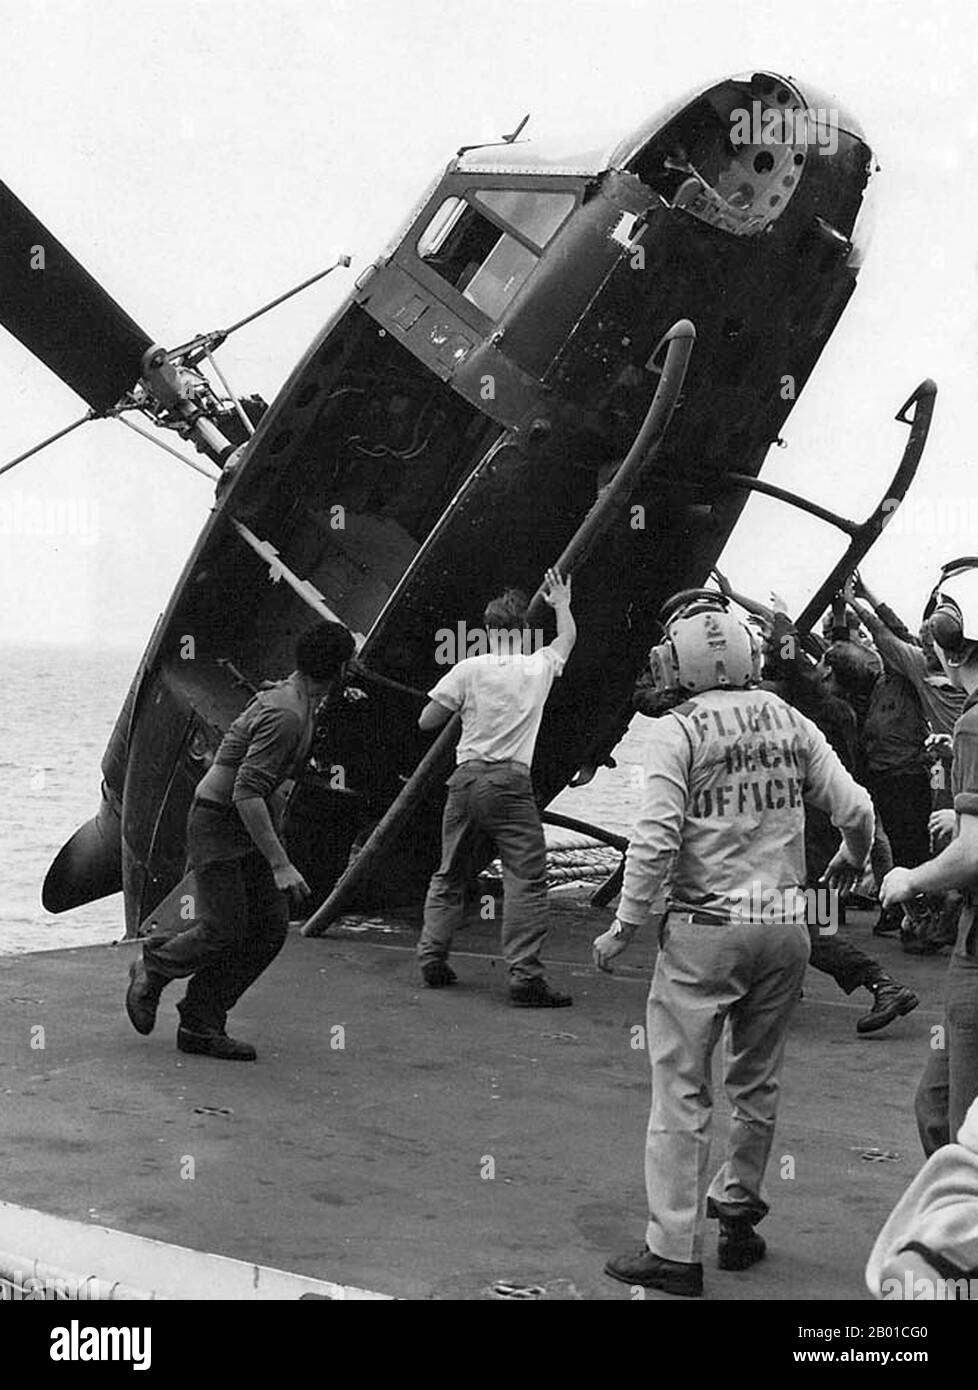 Vietnam/USA: Opération vent fréquent, avril 1975 - Un hélicoptère excédentaire est sans cérémonie sur le côté de l'USS Okinawa pour faire place à d'autres avions d'évacuation. L'opération vent fréquent a été l'évacuation par hélicoptère de civils américains et de Vietnamiens « à risque » de Saigon, dans le sud du Vietnam, les 29 et 30 avril 1975 au cours des derniers jours de la guerre du Vietnam. Plus de 7 000 personnes ont été évacuées de différents points de Saigon, et le pont aérien a laissé un certain nombre d'images durables. La préparation du transport aérien existait déjà comme une procédure standard pour les ambassades américaines. Banque D'Images